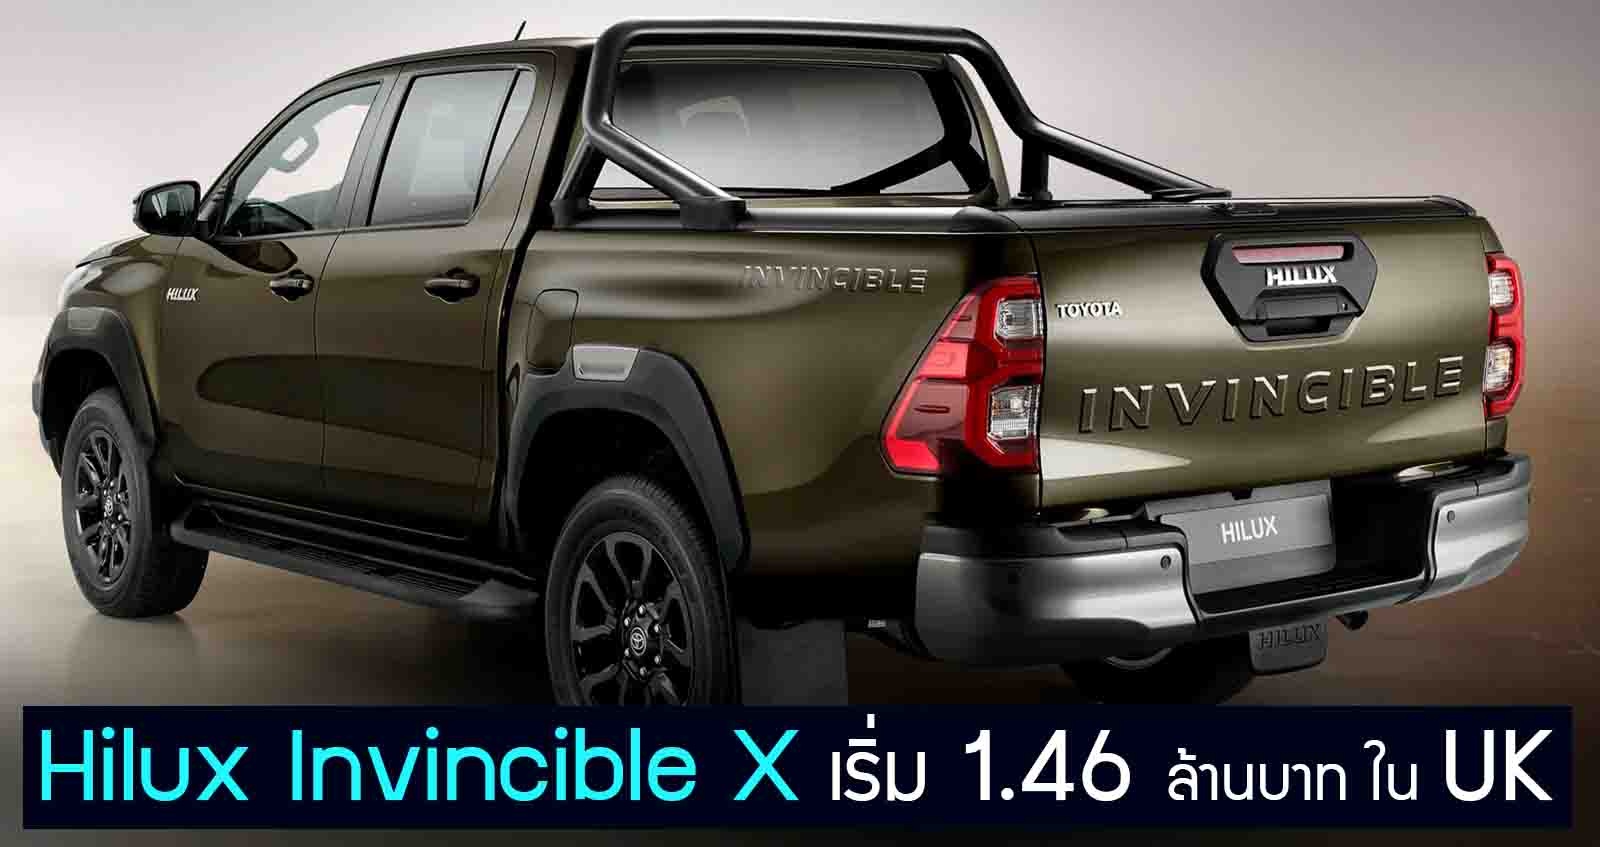 เปิดราคา Toyota Hilux Invincible X เริ่ม 1.46 ล้านบาท ในสหราชอาณาจักร